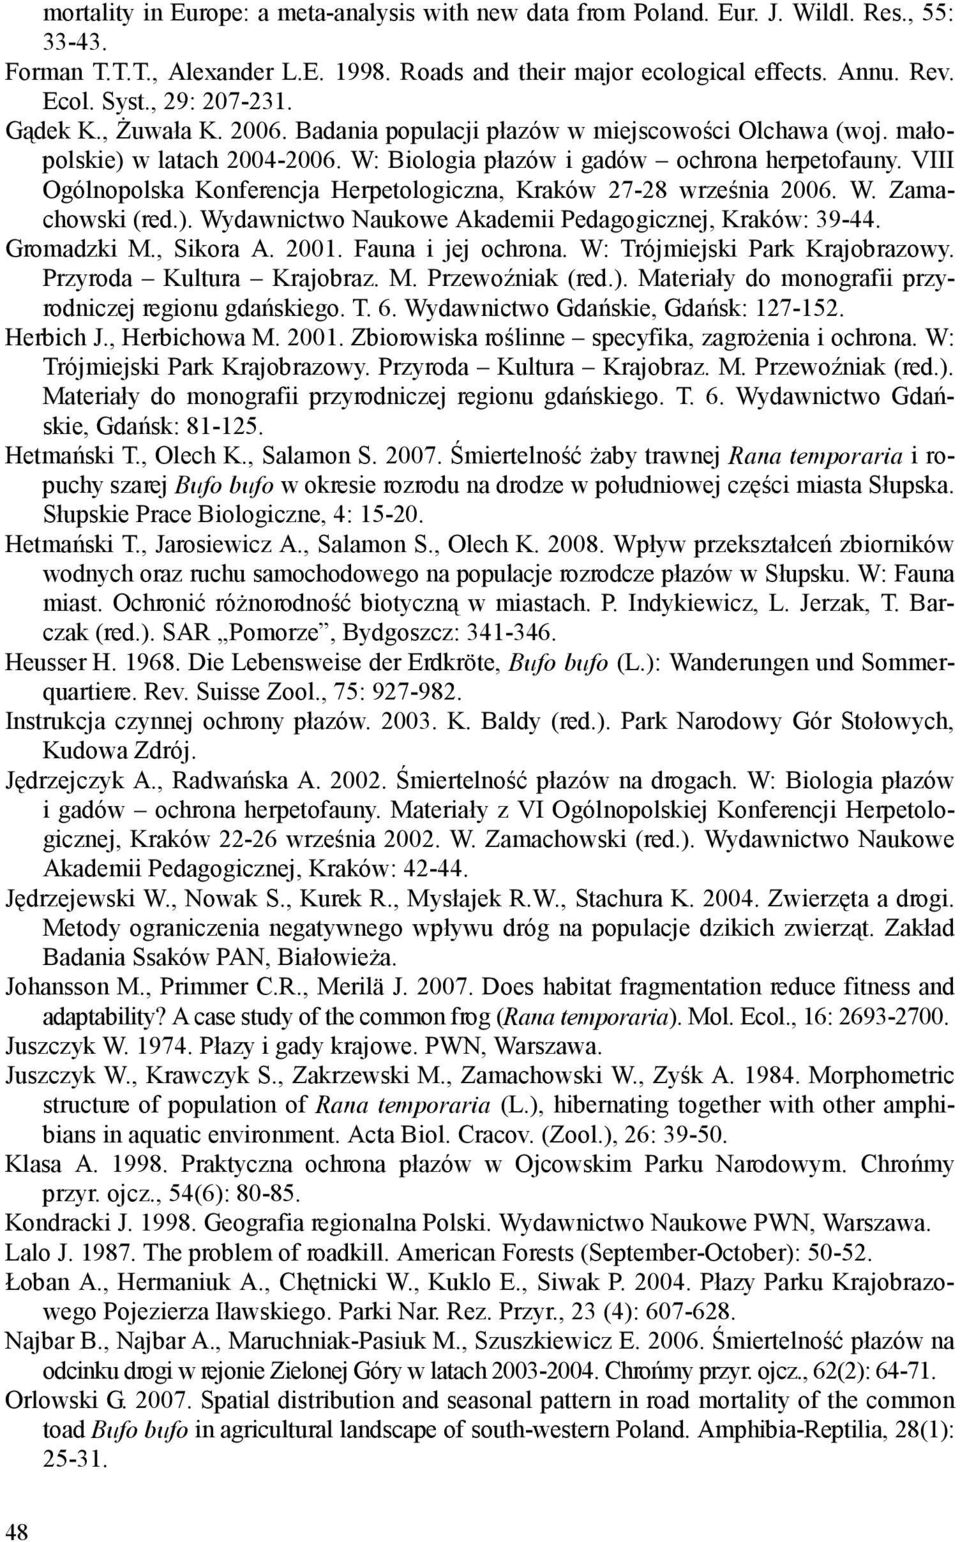 VIII Ogólnopolska Konferencja Herpetologiczna, Kraków 27-28 września 2006. W. Zamachowski (red.). Wydawnictwo Naukowe Akademii Pedagogicznej, Kraków: 39-44. Gromadzki M., Sikora A. 2001.